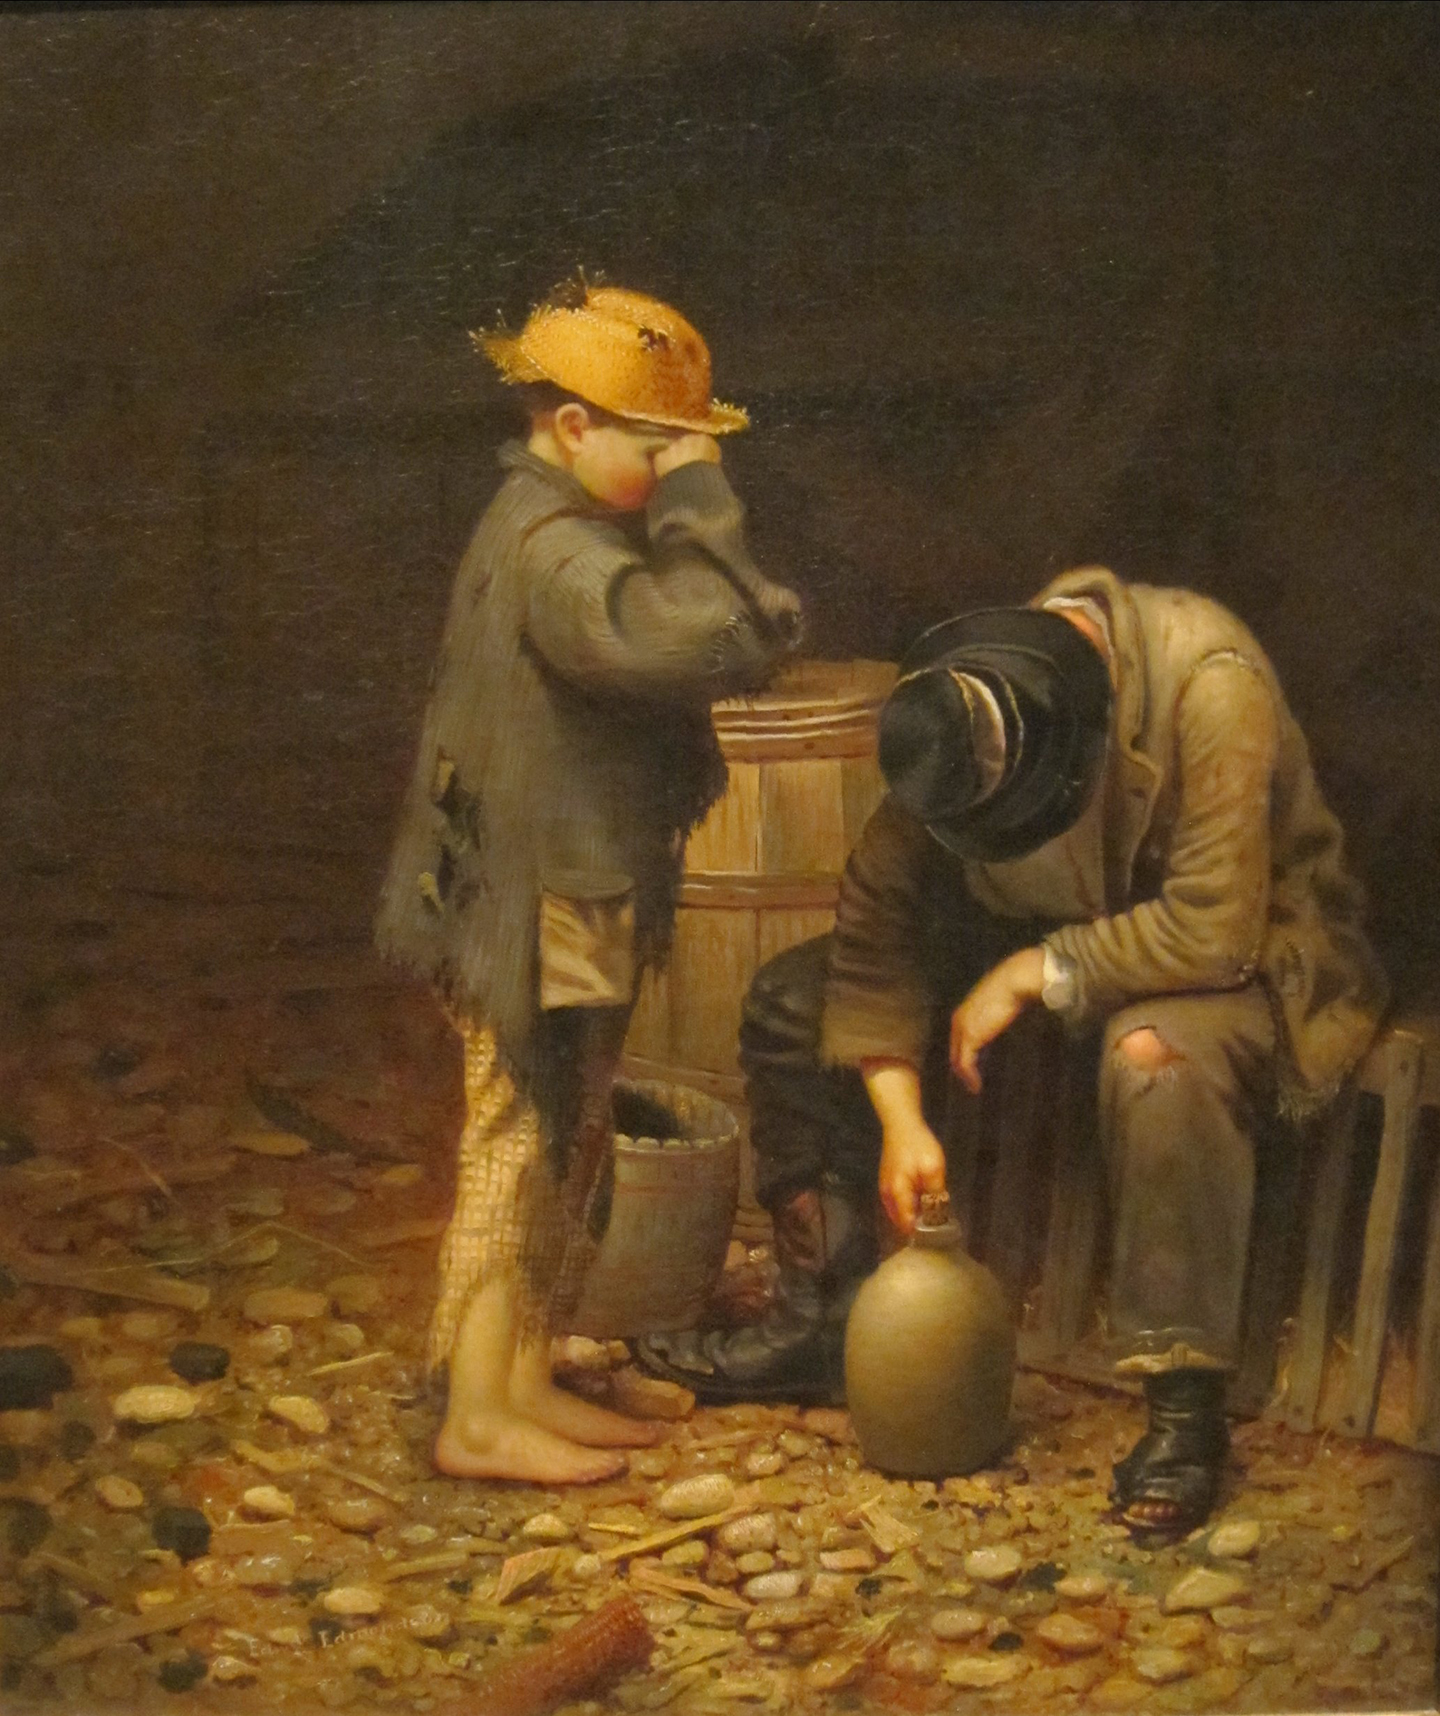 Tác phẩm “Temperance Lecture” (Bài Học Về Sự Điều Độ) của họa sĩ Edward Edmondson, Jr vẽ năm 1861. Tranh sơn dầu trên vải canvas. Viện Nghệ thuật Dayton, tiểu bang Ohio. (Ảnh: Tài liệu công cộng)